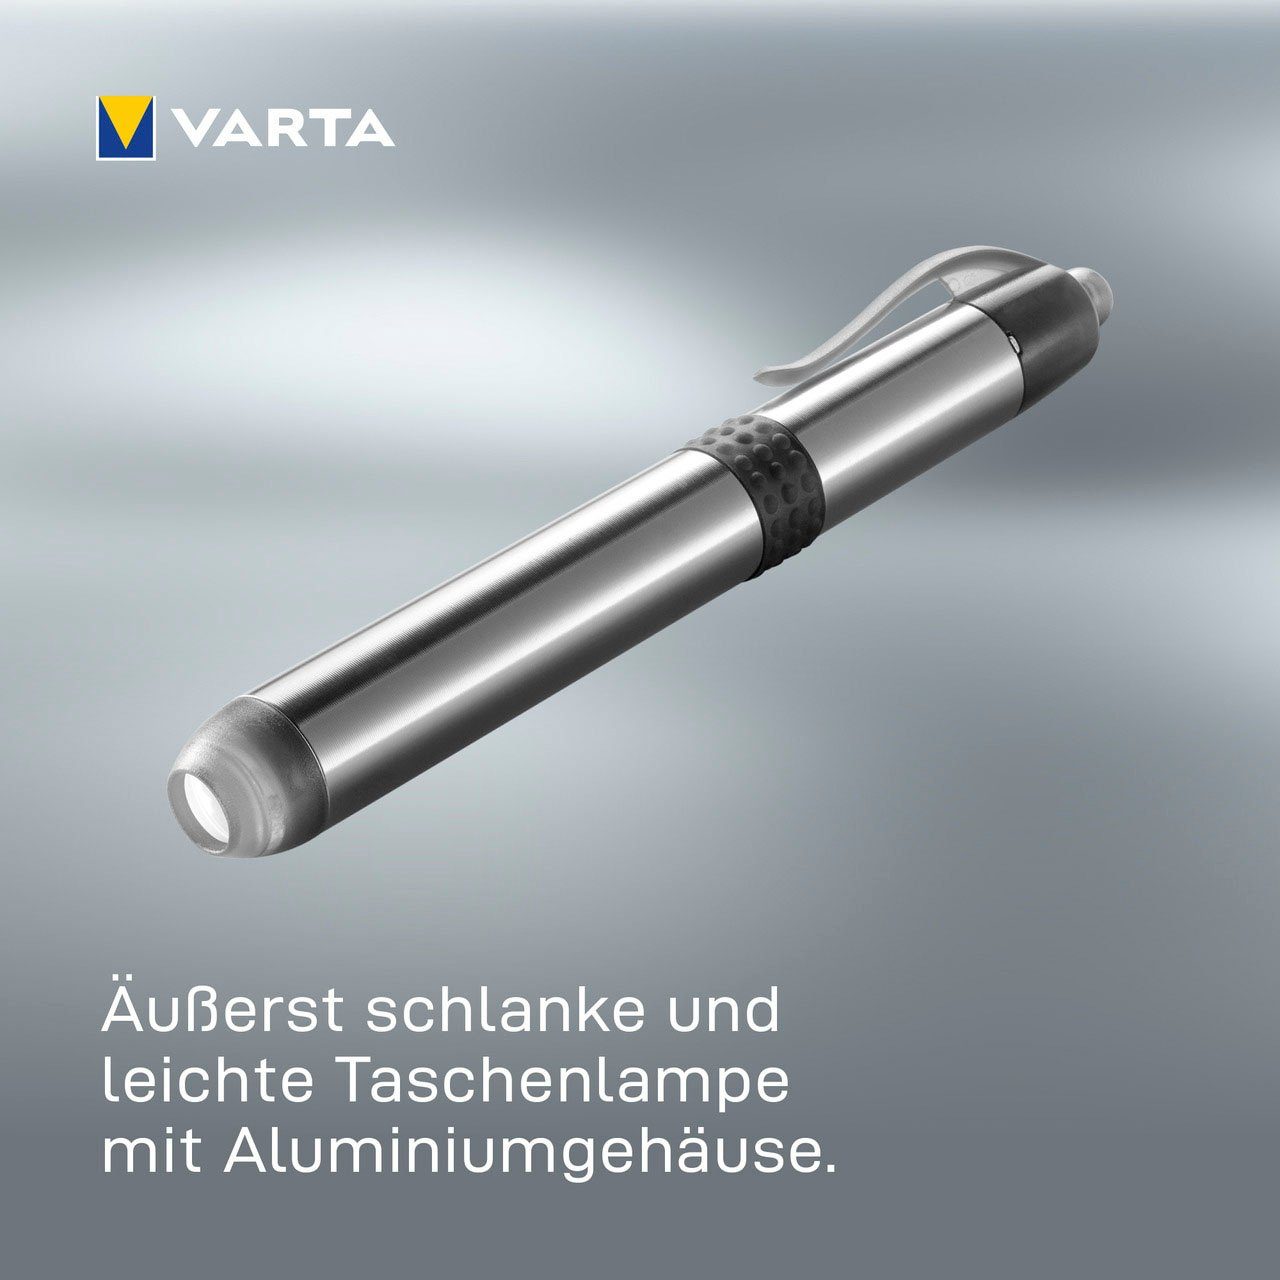 Light Pen VARTA Batt. Taschenlampe with 1AAA